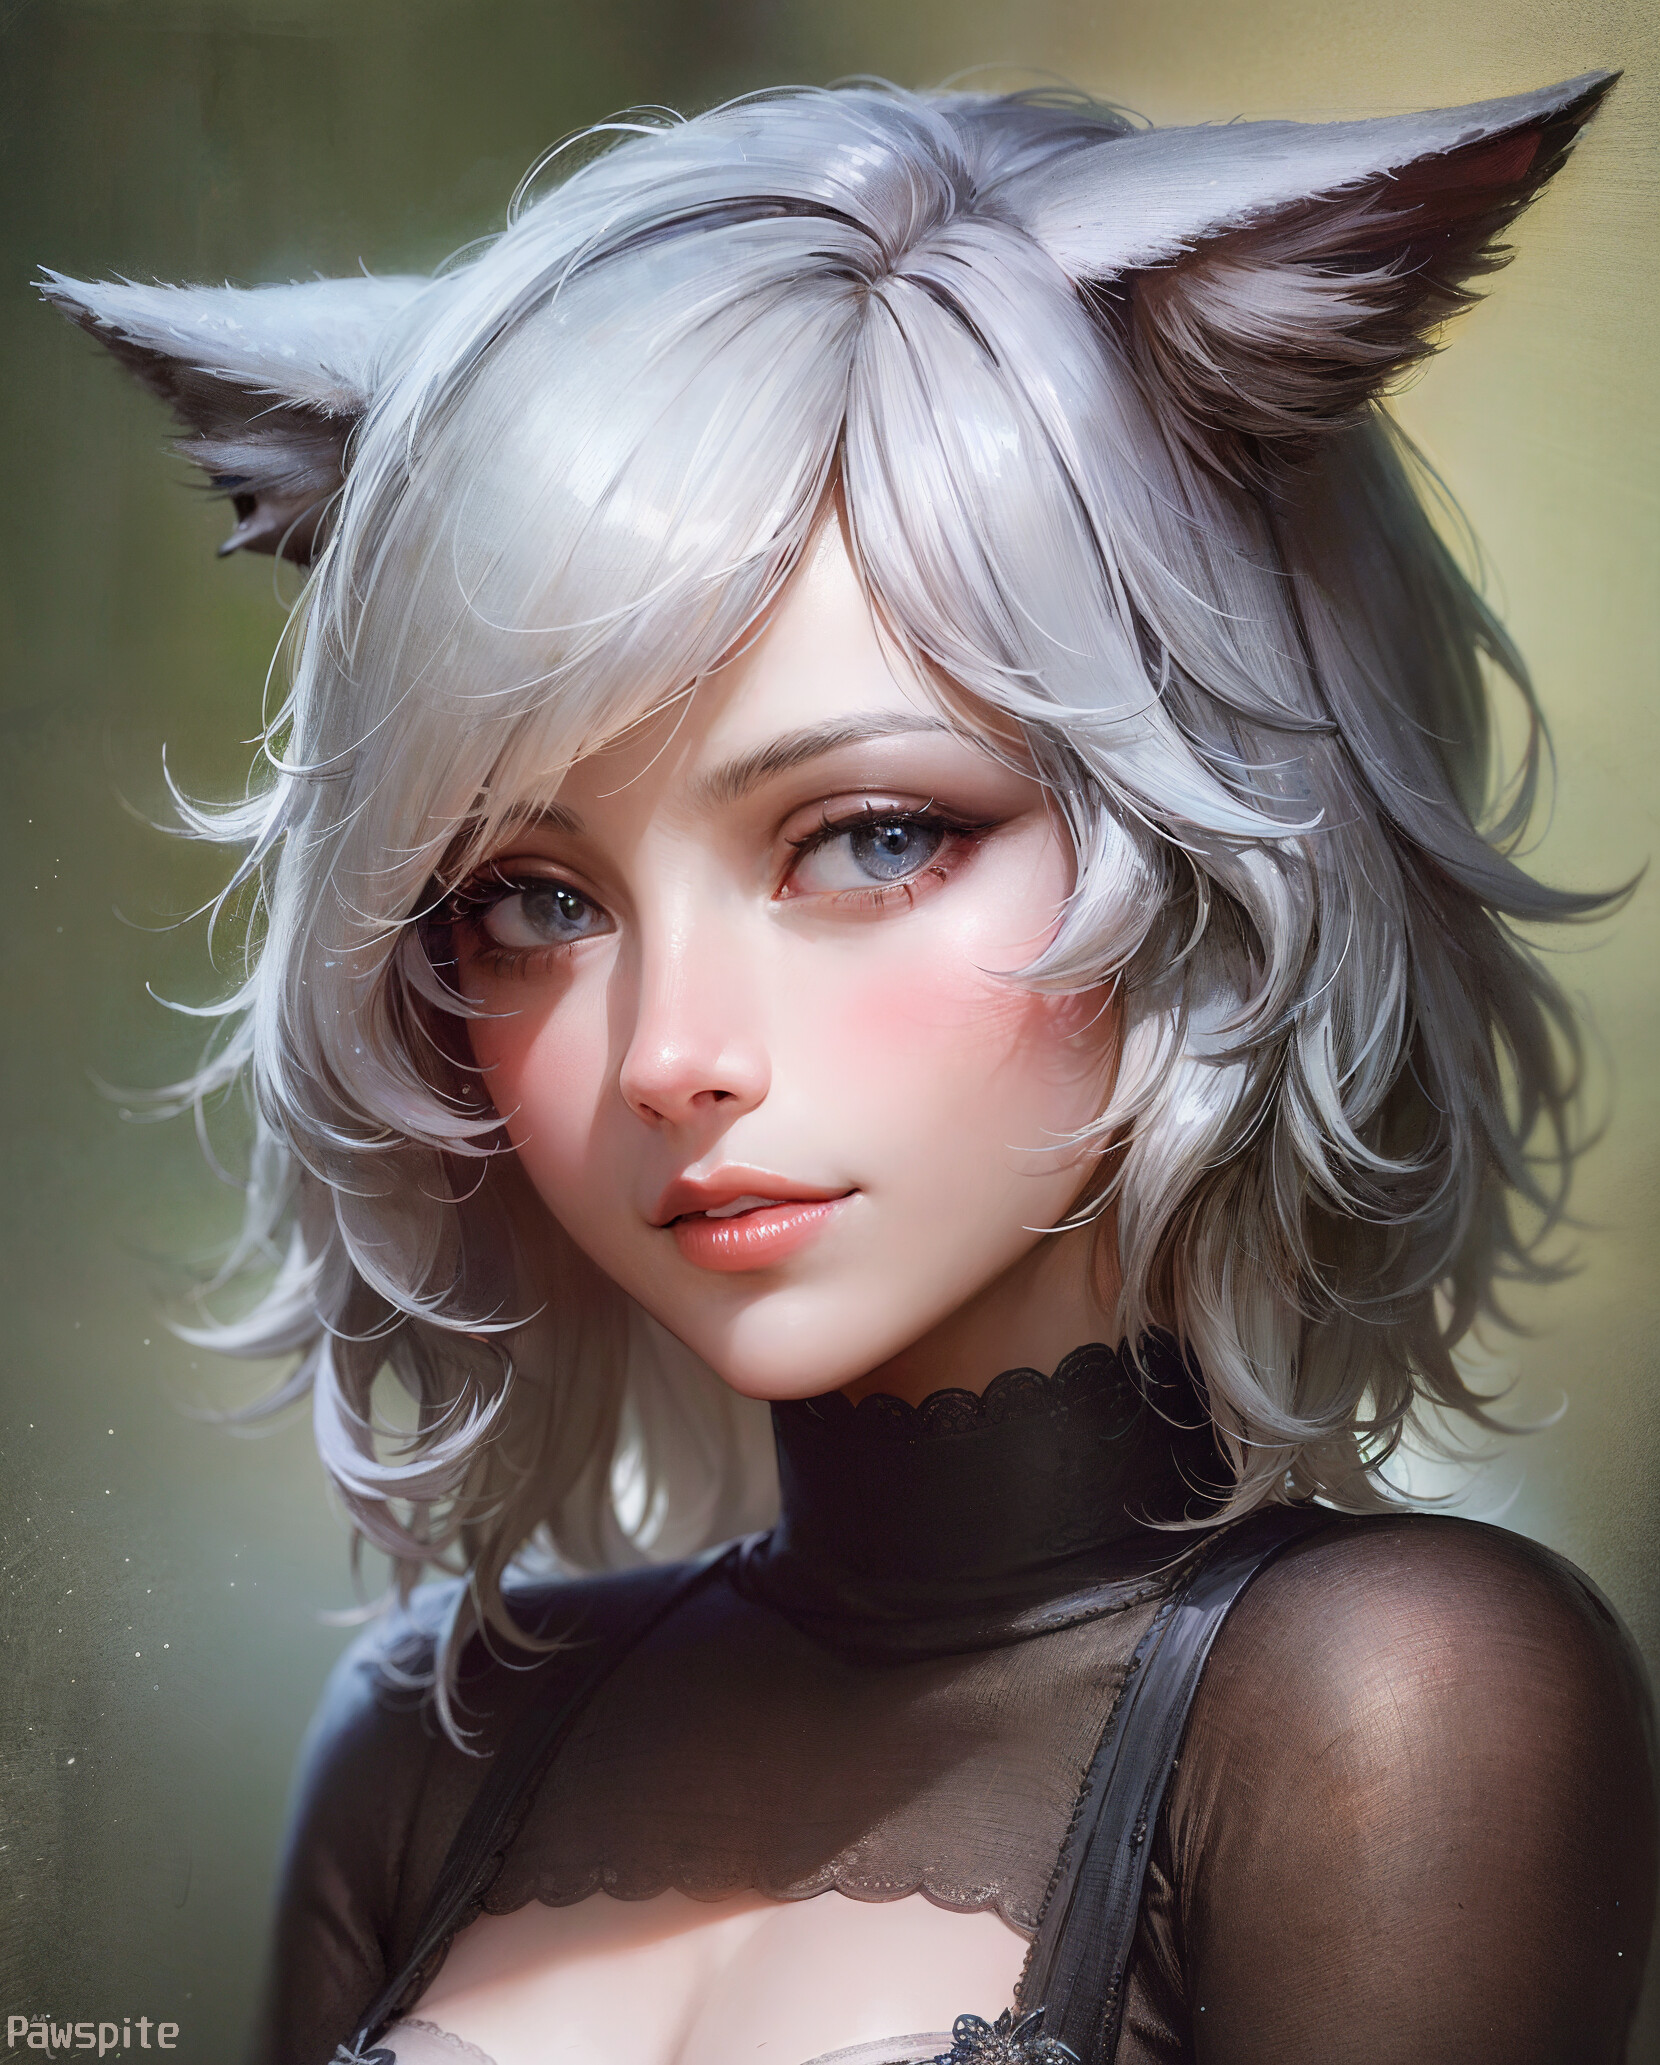 Ai Art Digital Art Women Illustration Animal Ears Cat Girl Short Hair Portrait Pawspite Anime Girls  1660x2065